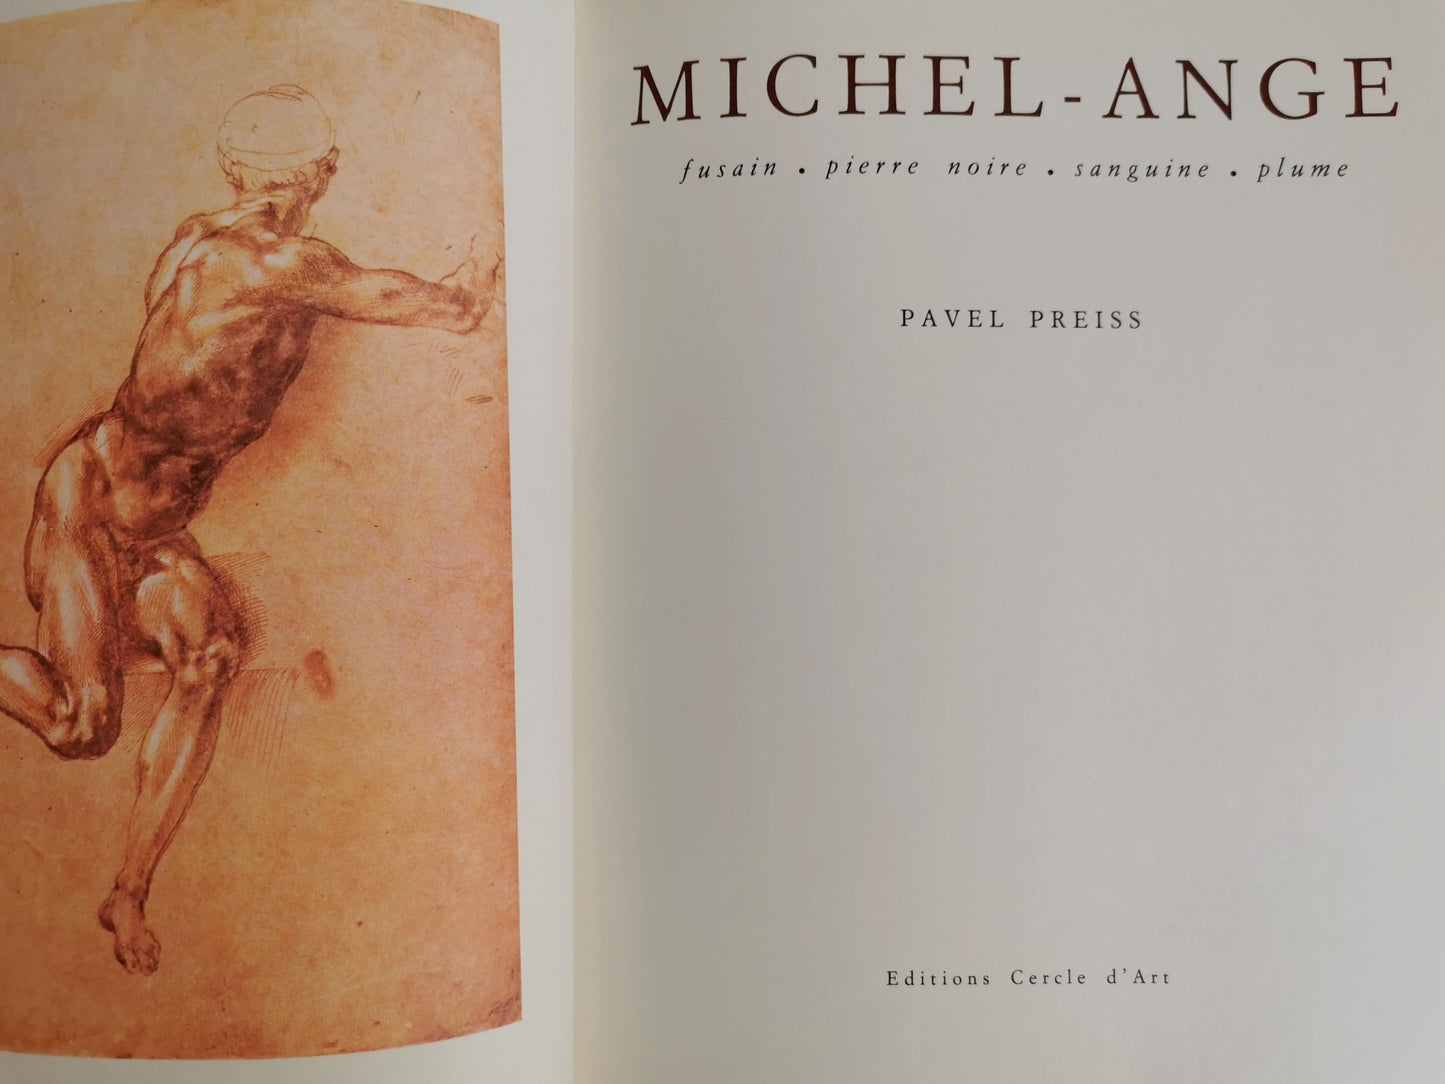 Michel-Ange, fusain -pierre noire - sanguine - plume, Pavel Preiss, Editions Cercle d'Art, 1976.